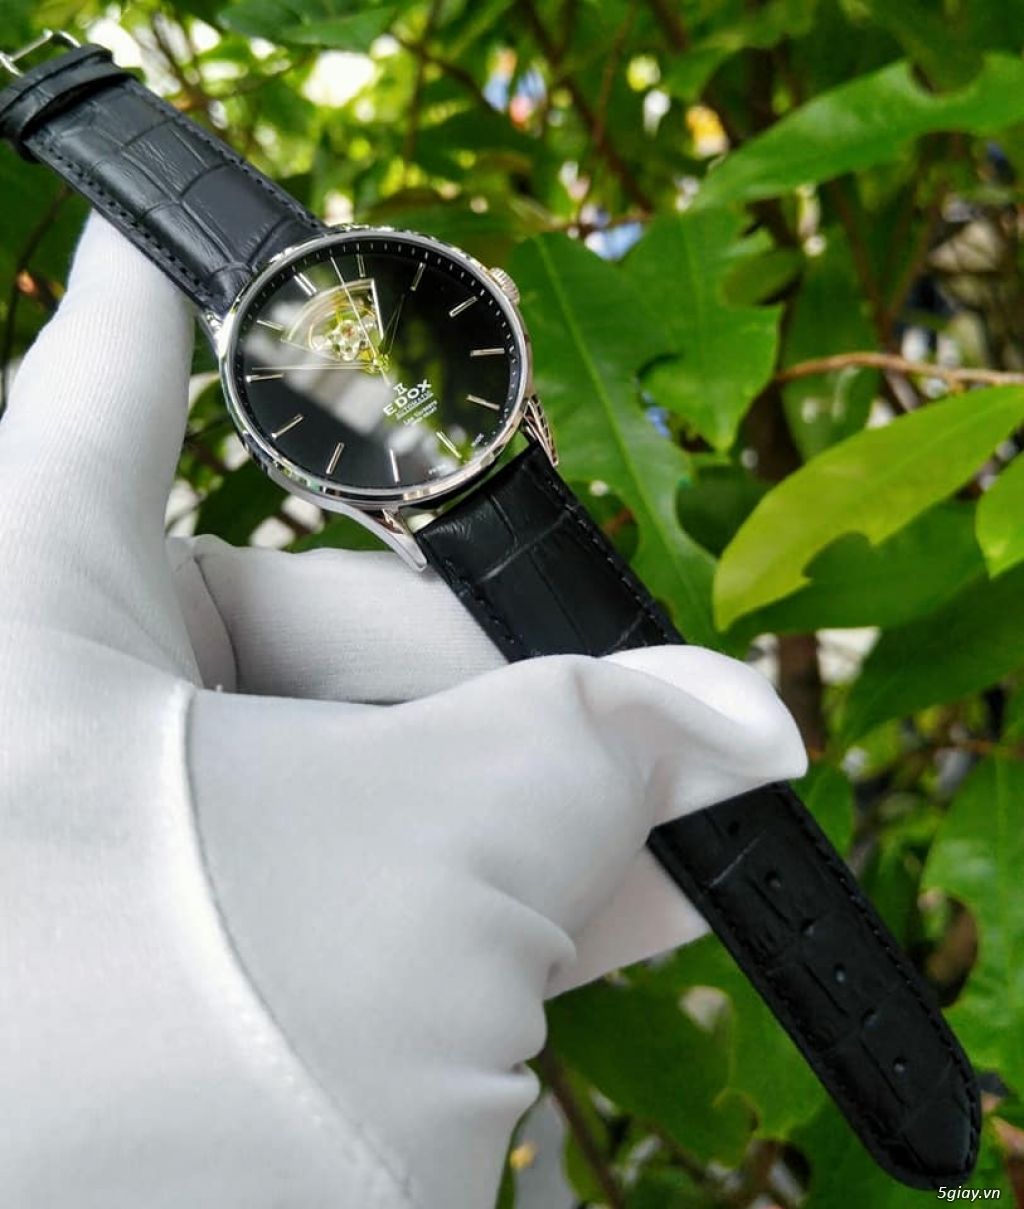 Đồng hồ Thụy Sỹ cực chất với giá mềm: Edox - 15